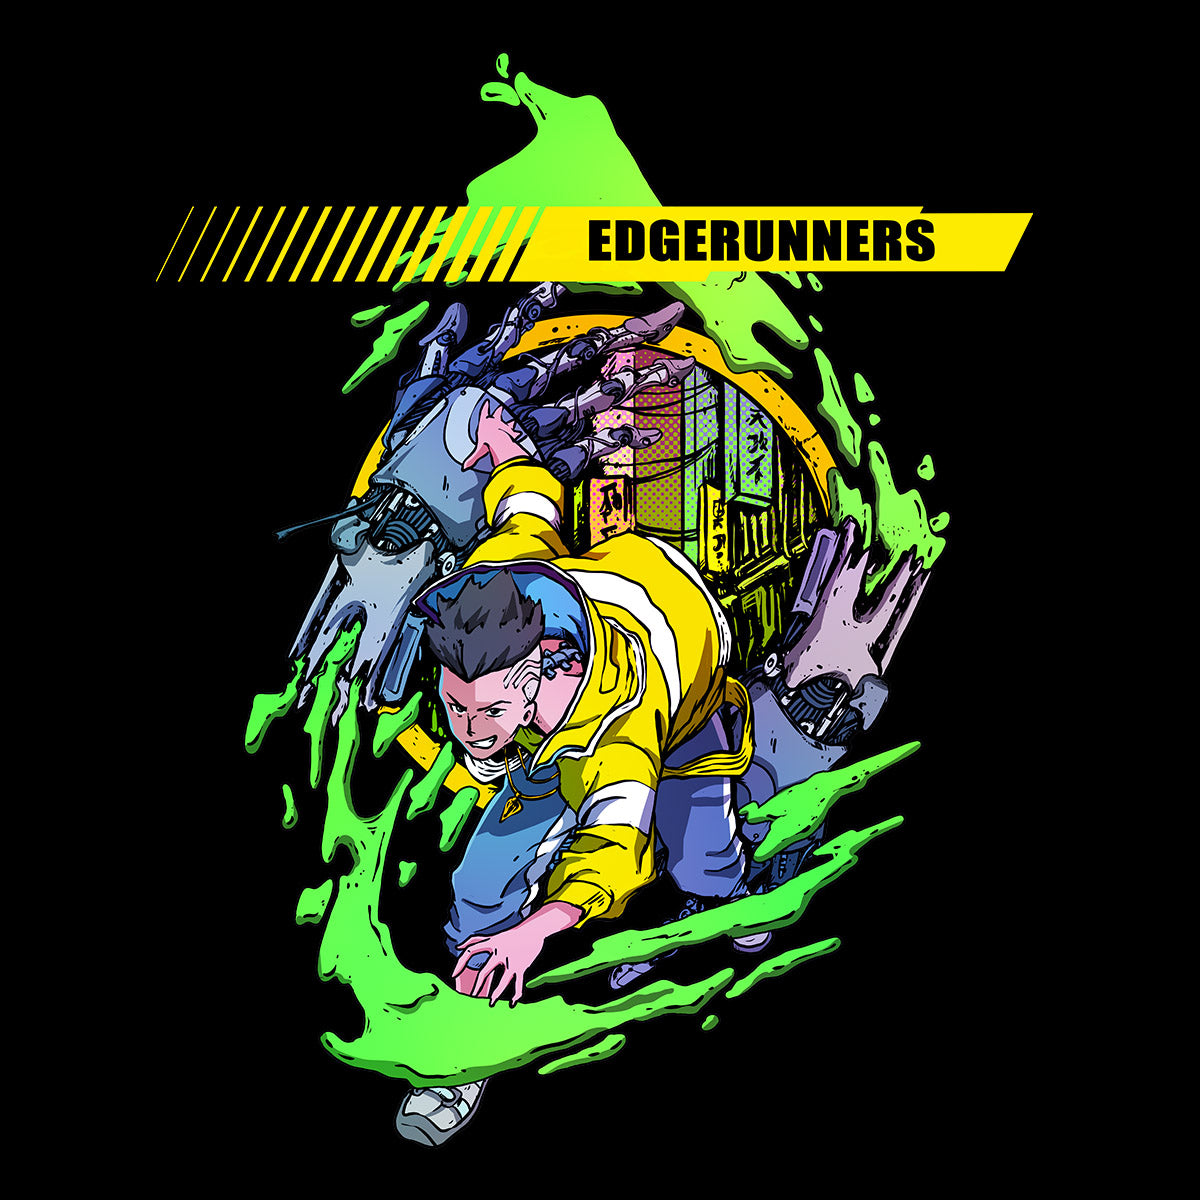 Edgerunners Cyberpunk Black  T-Shirt